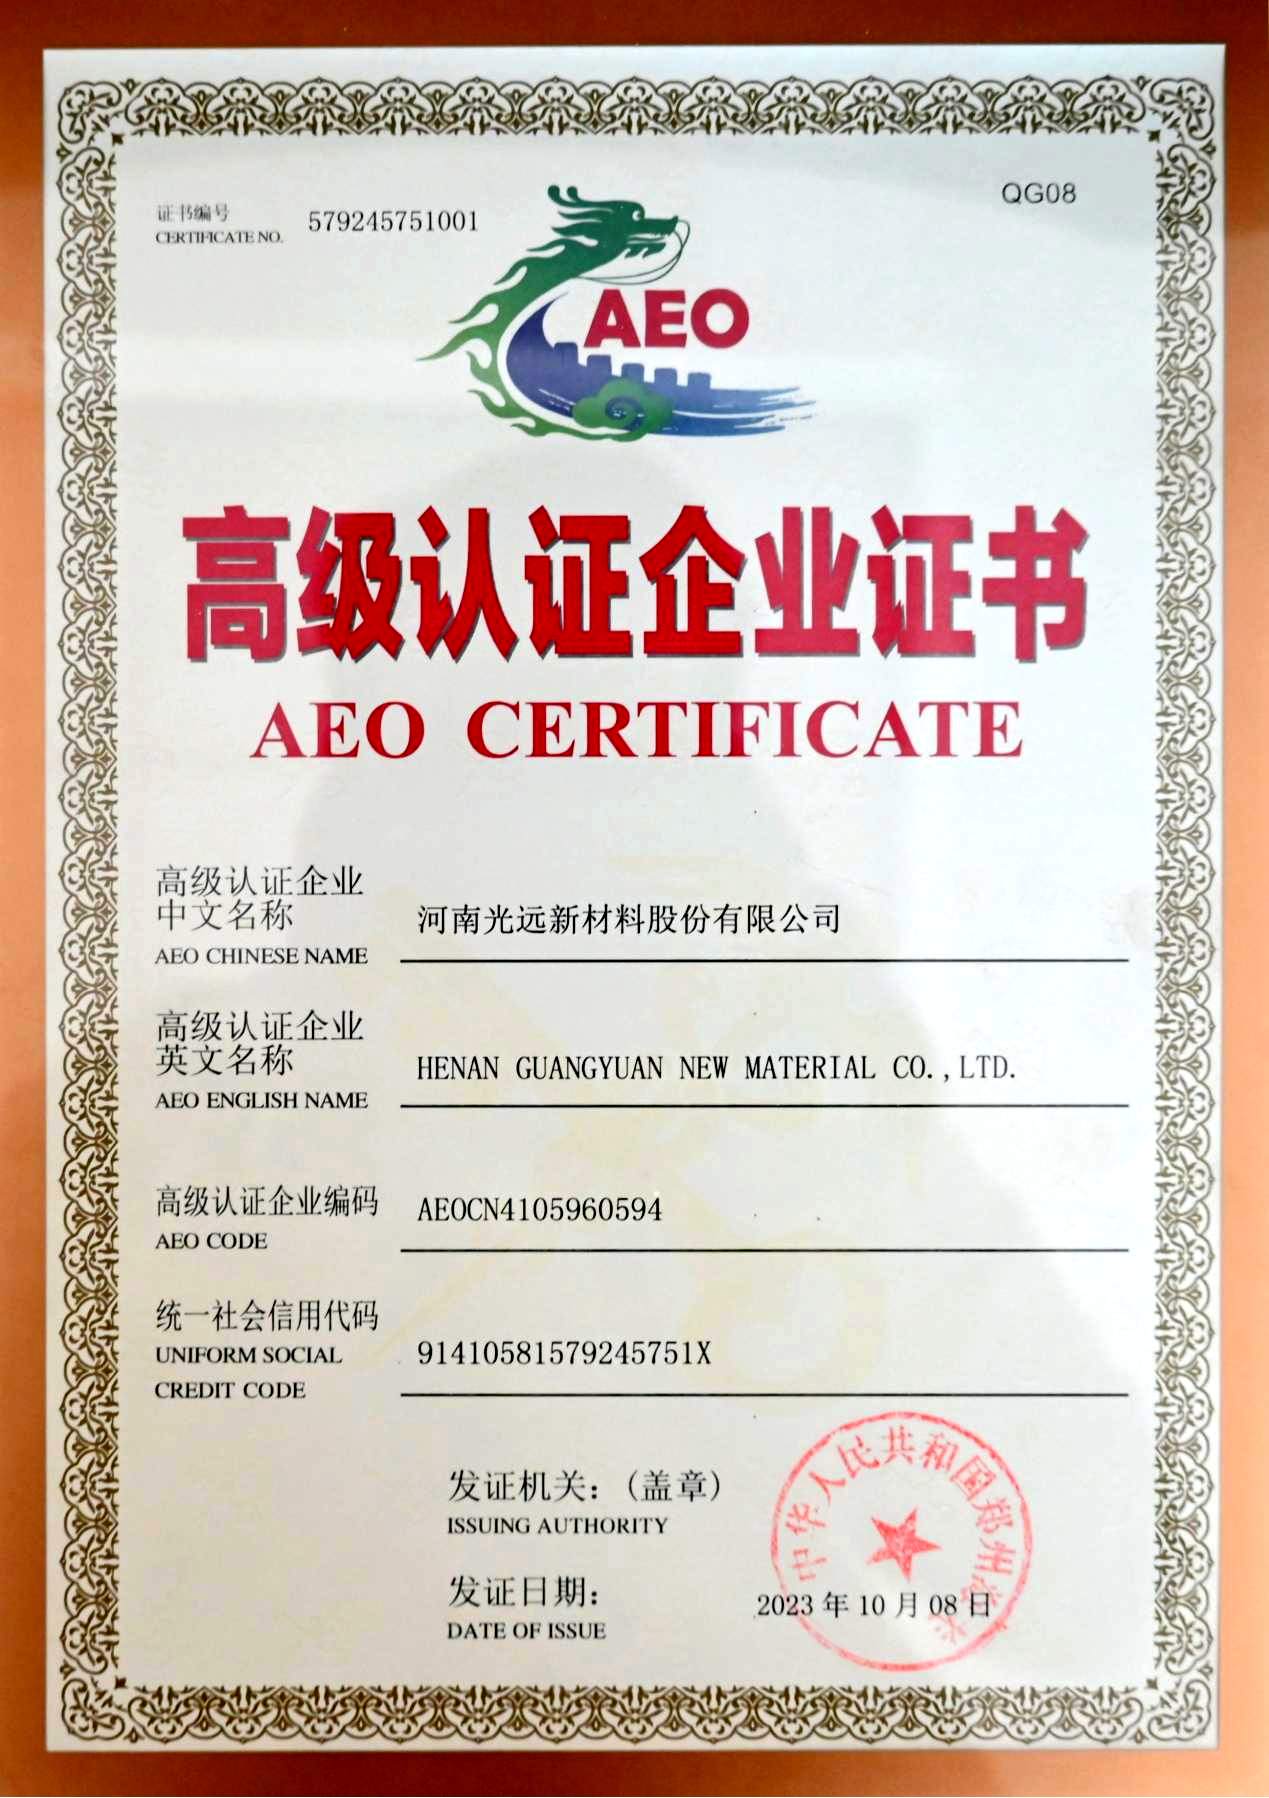 威尼斯569vip游戏获颁海关AEO高级认证企业证书